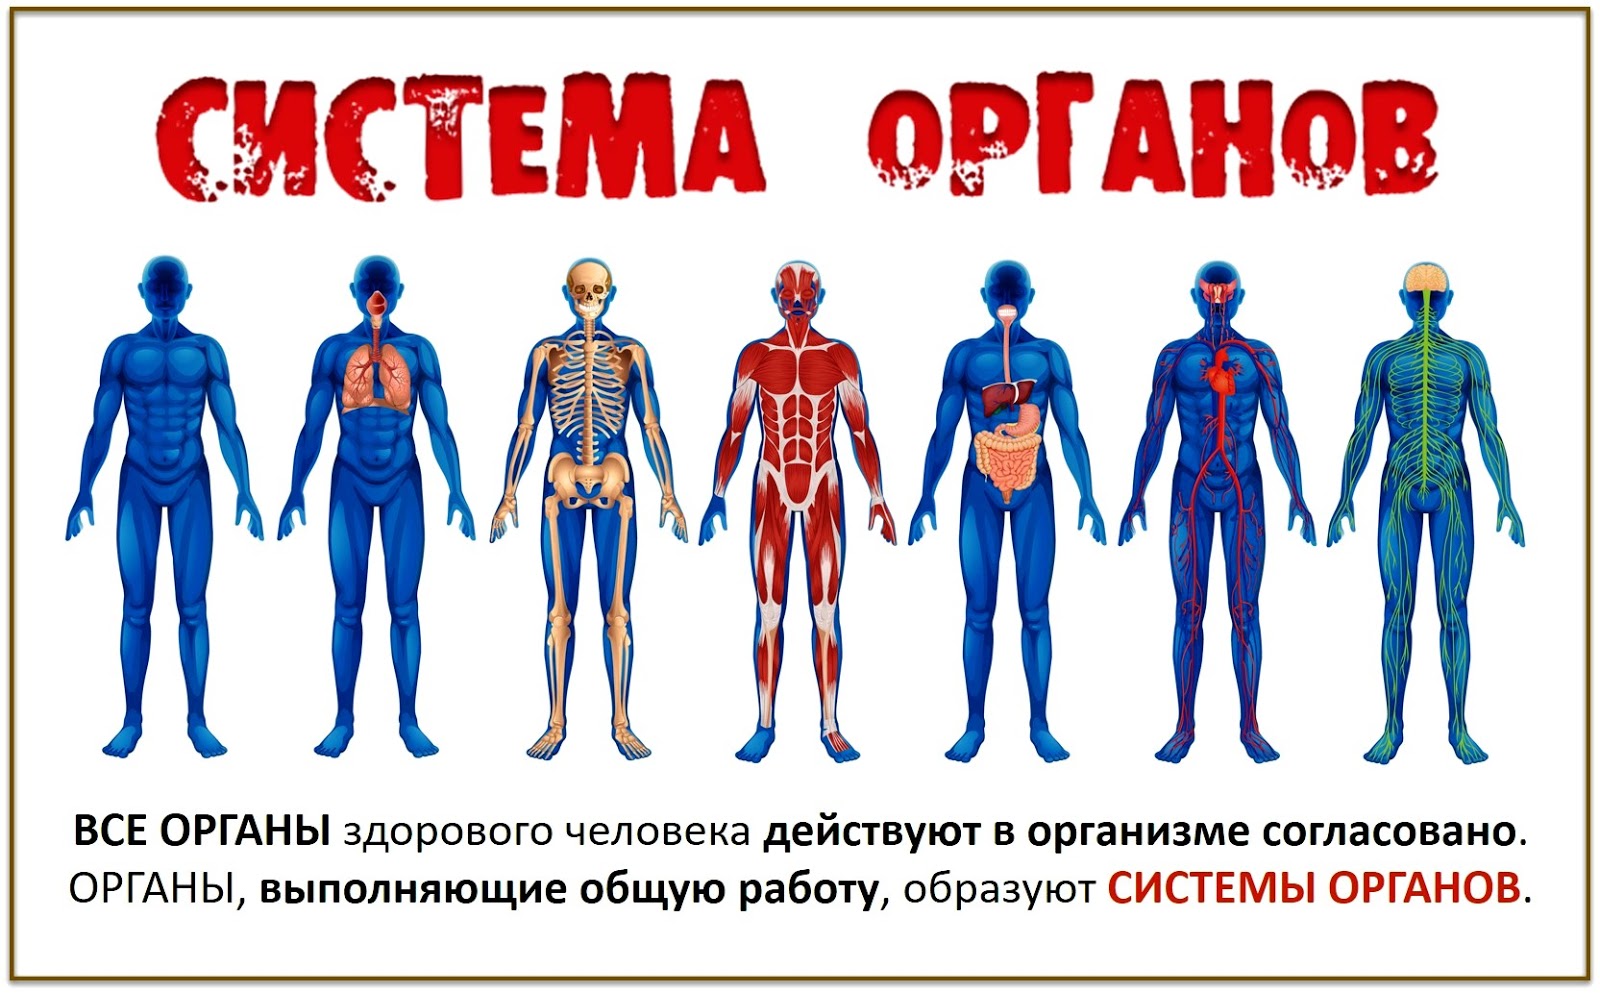 Изображения систем органов человека. Системы организма. Системы человеческого организма. Системы органов человека человека. Системы органов в теле человека.